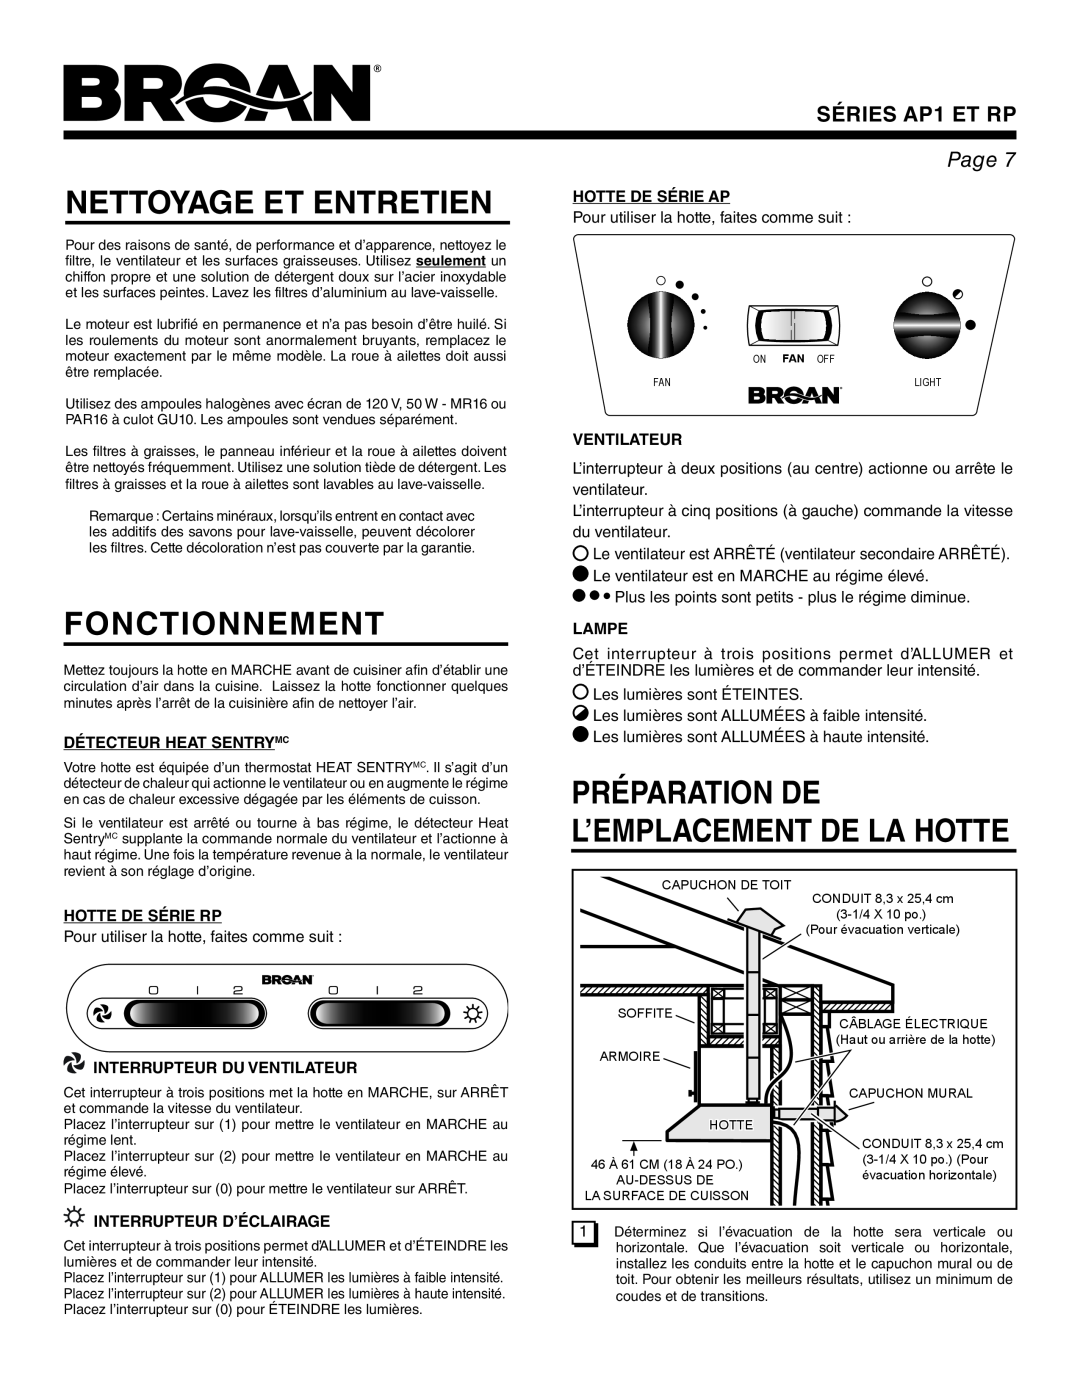 Broan AP1 Nettoyage Et Entretien, Fonctionnement, Préparation De L’Emplacement De La Hotte, Détecteur Heat Sentrymc, Lampe 